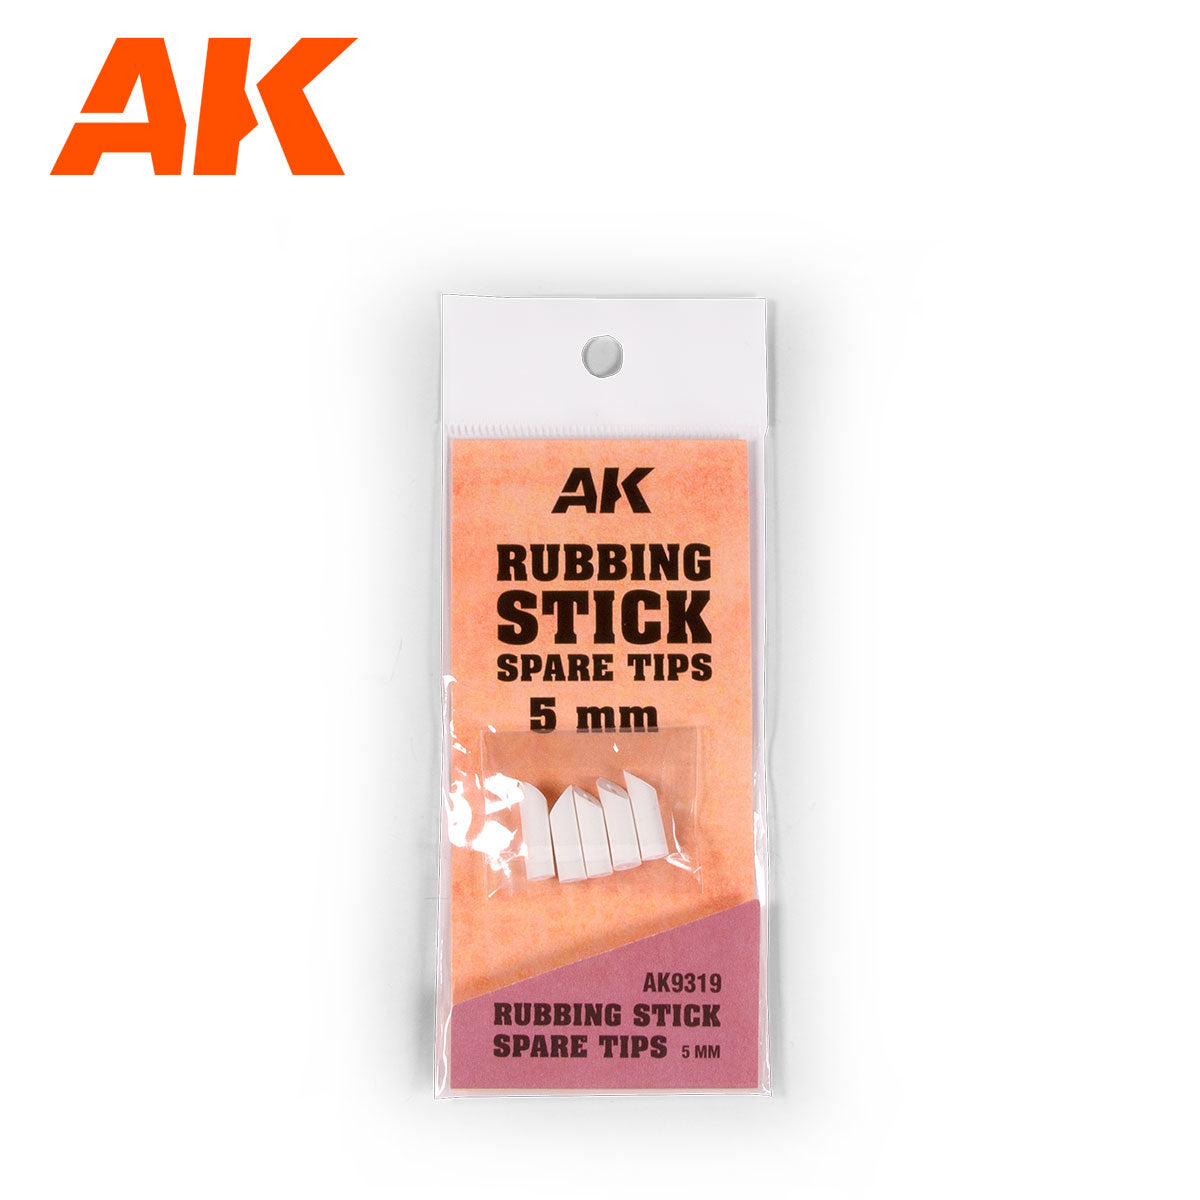 AK9319 - Rubbing Stick Spare Tips (5mm)